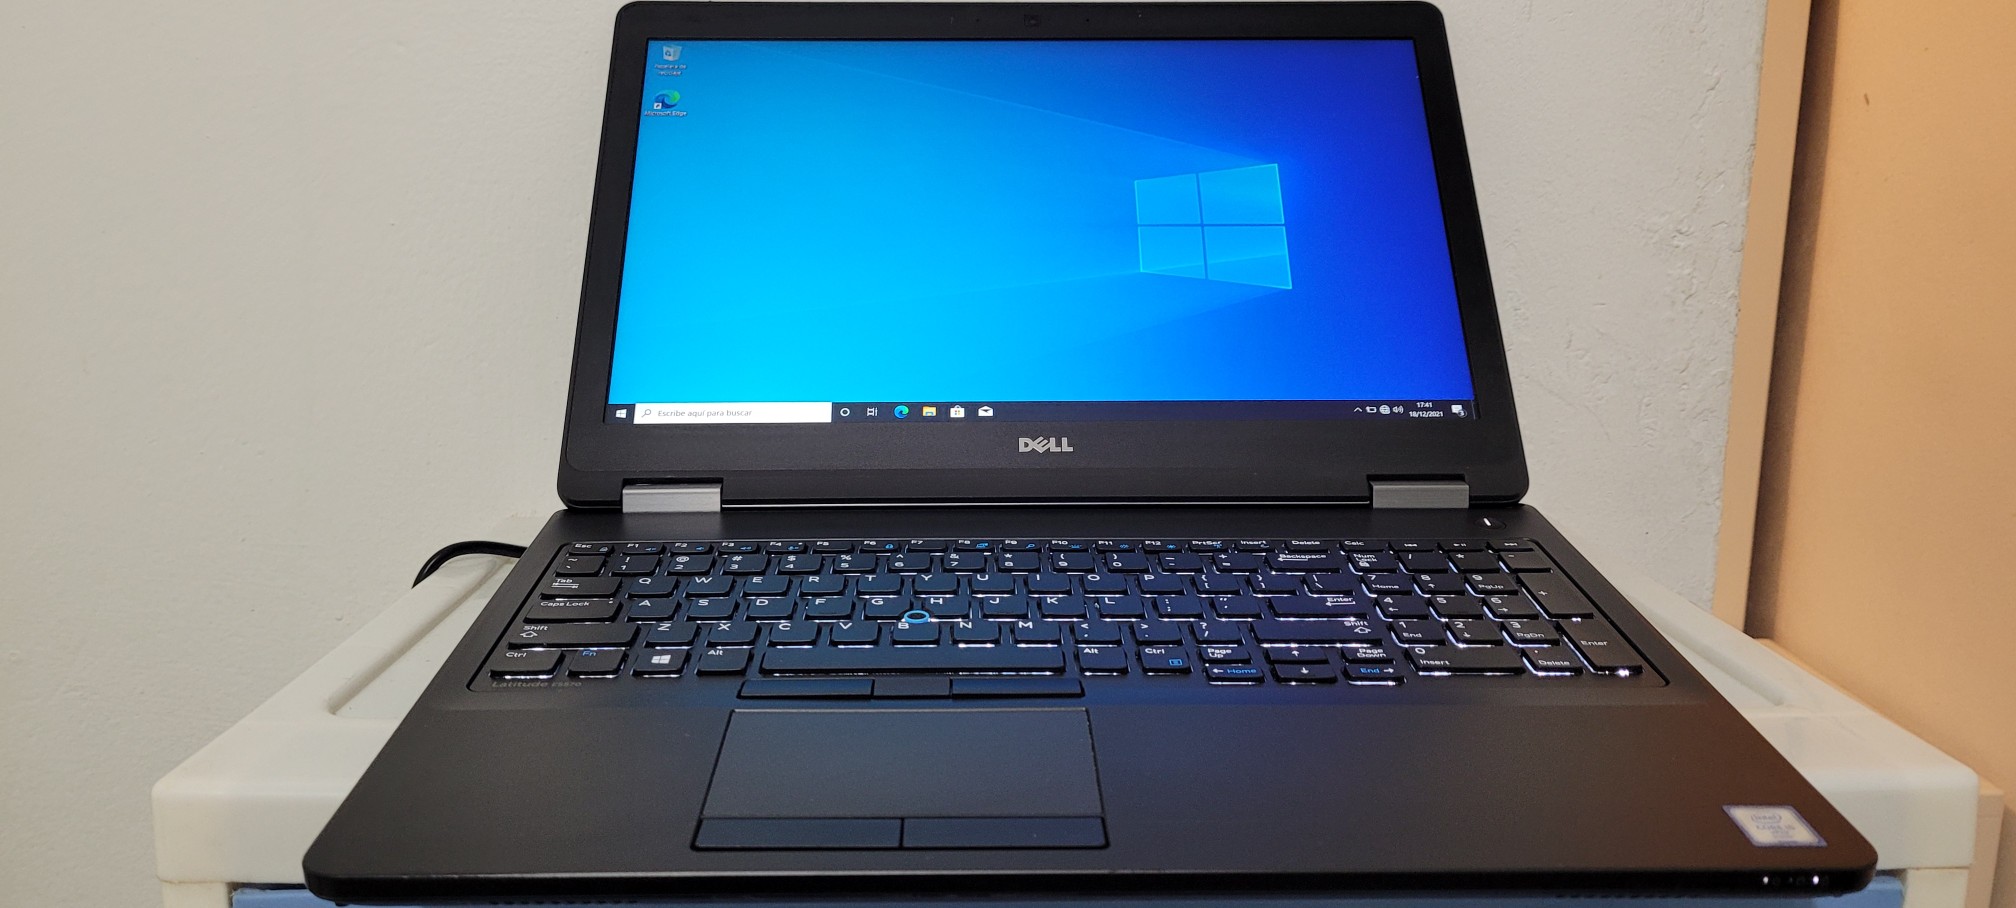 computadoras y laptops - Dell latitude 17 Pulg Core i7 2.6ghz Ram 8gb Disco 1000gb Teclado iluminado 0